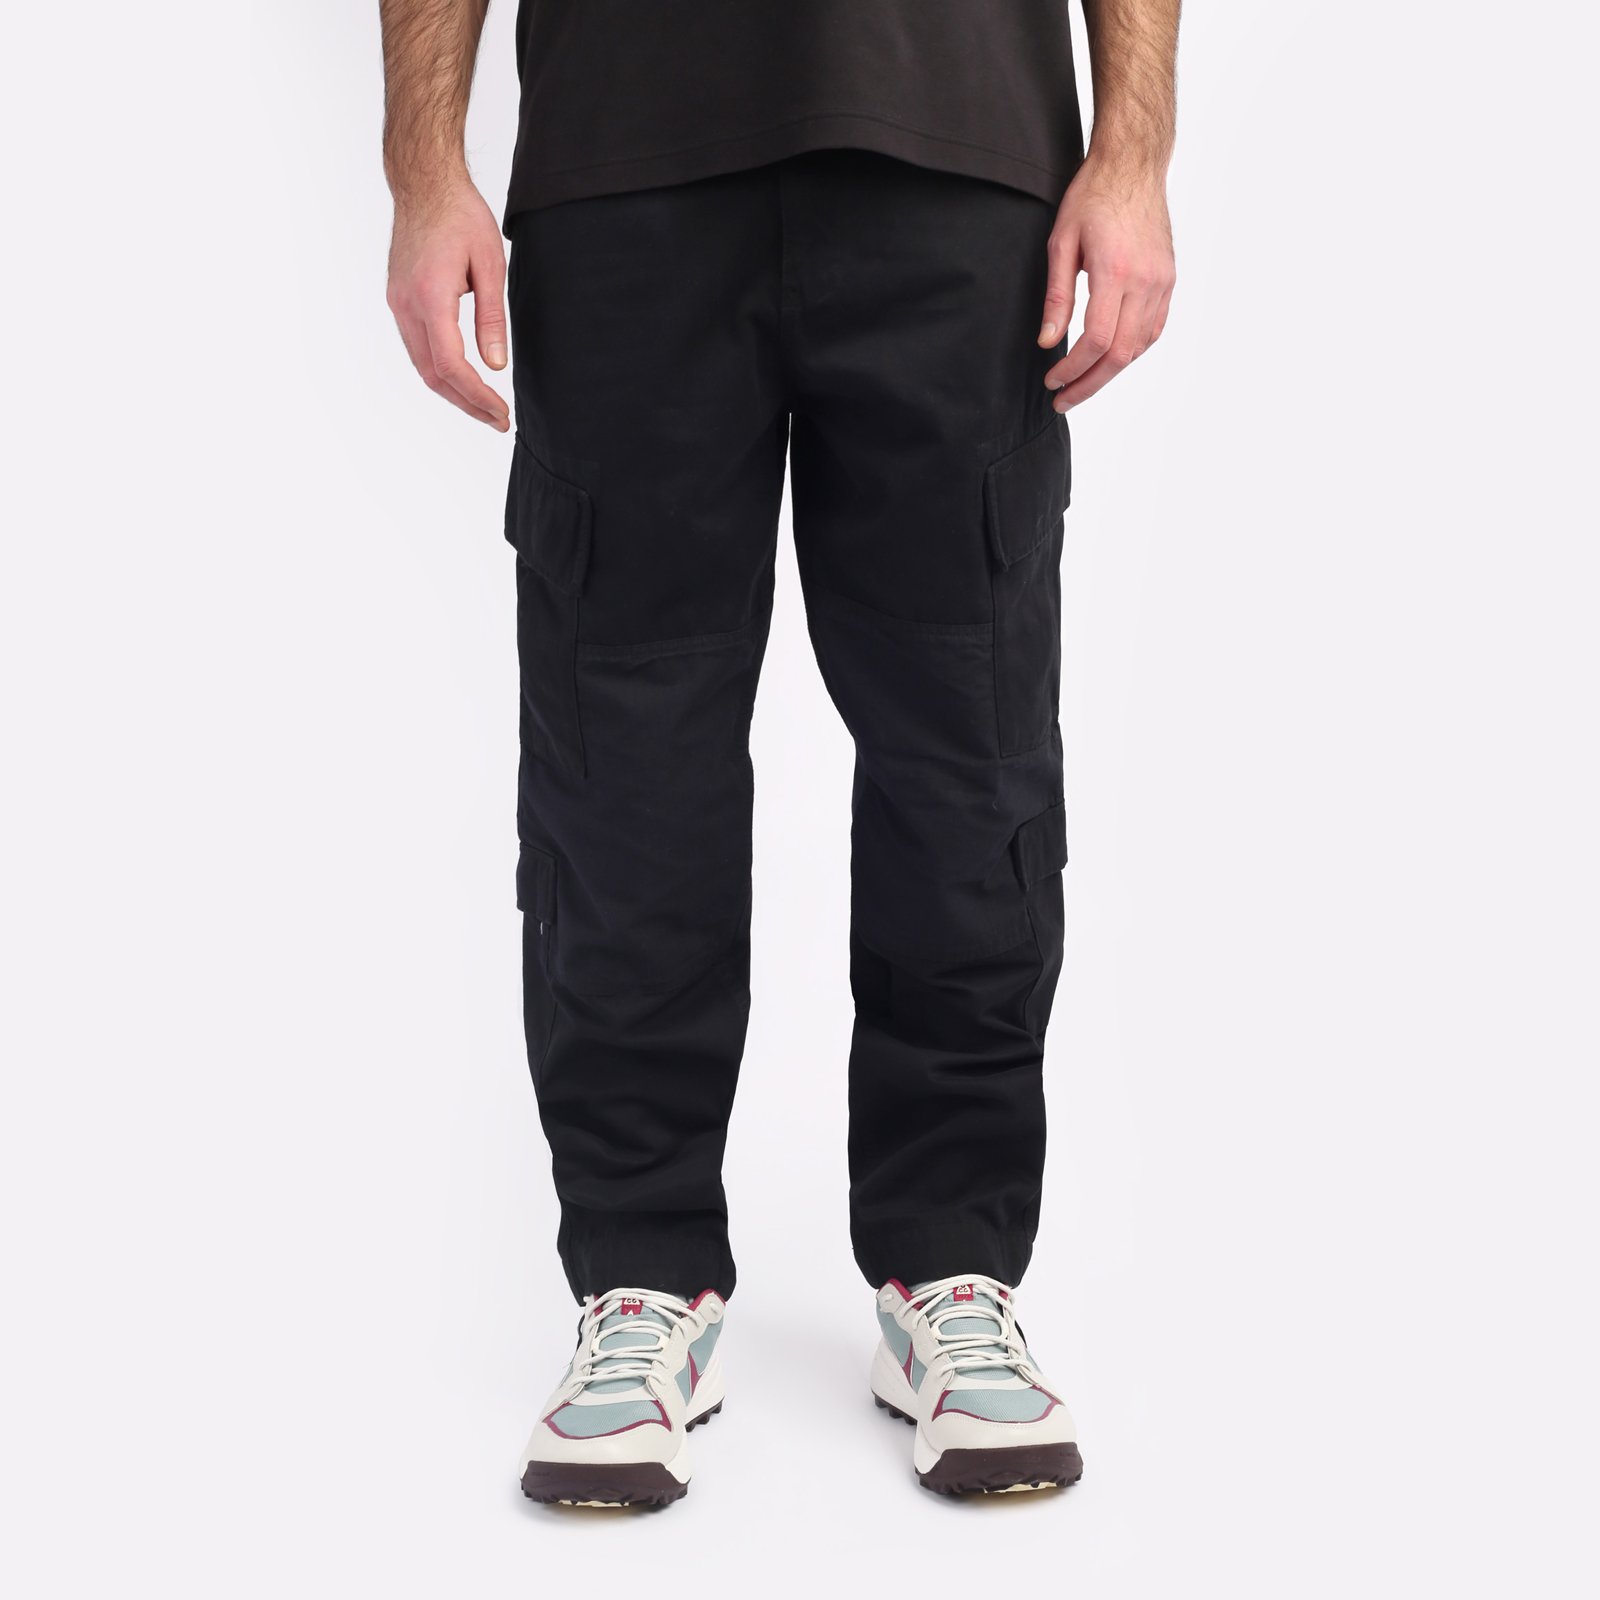 мужские брюки Alpha Industries ACU Pant  (MBA52501C1-black)  - цена, описание, фото 1